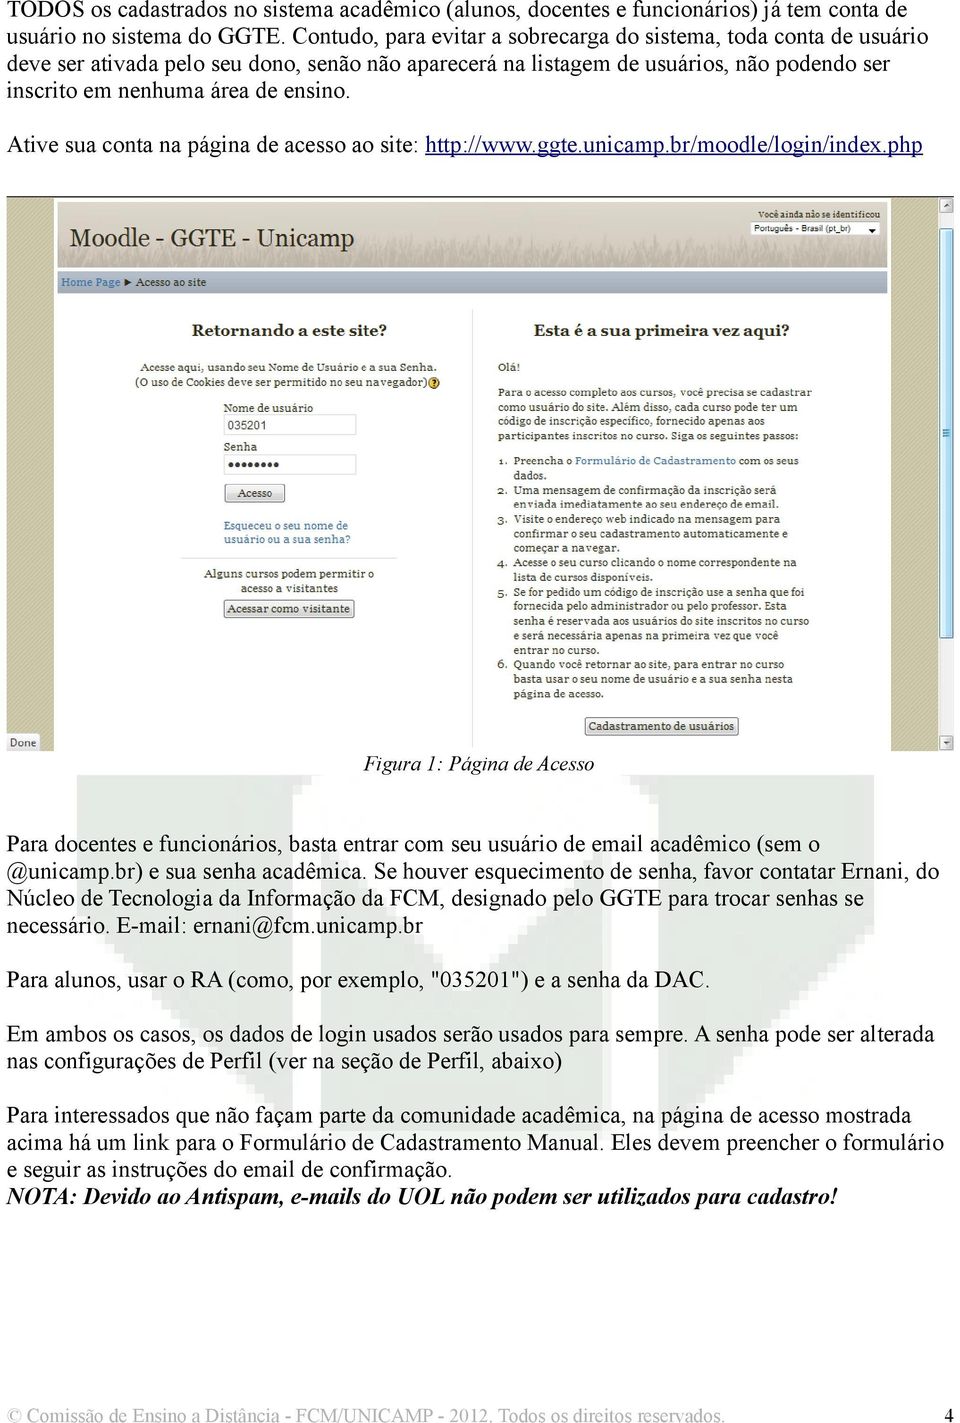 Ative sua conta na página de acesso ao site: http://www.ggte.unicamp.br/moodle/login/index.